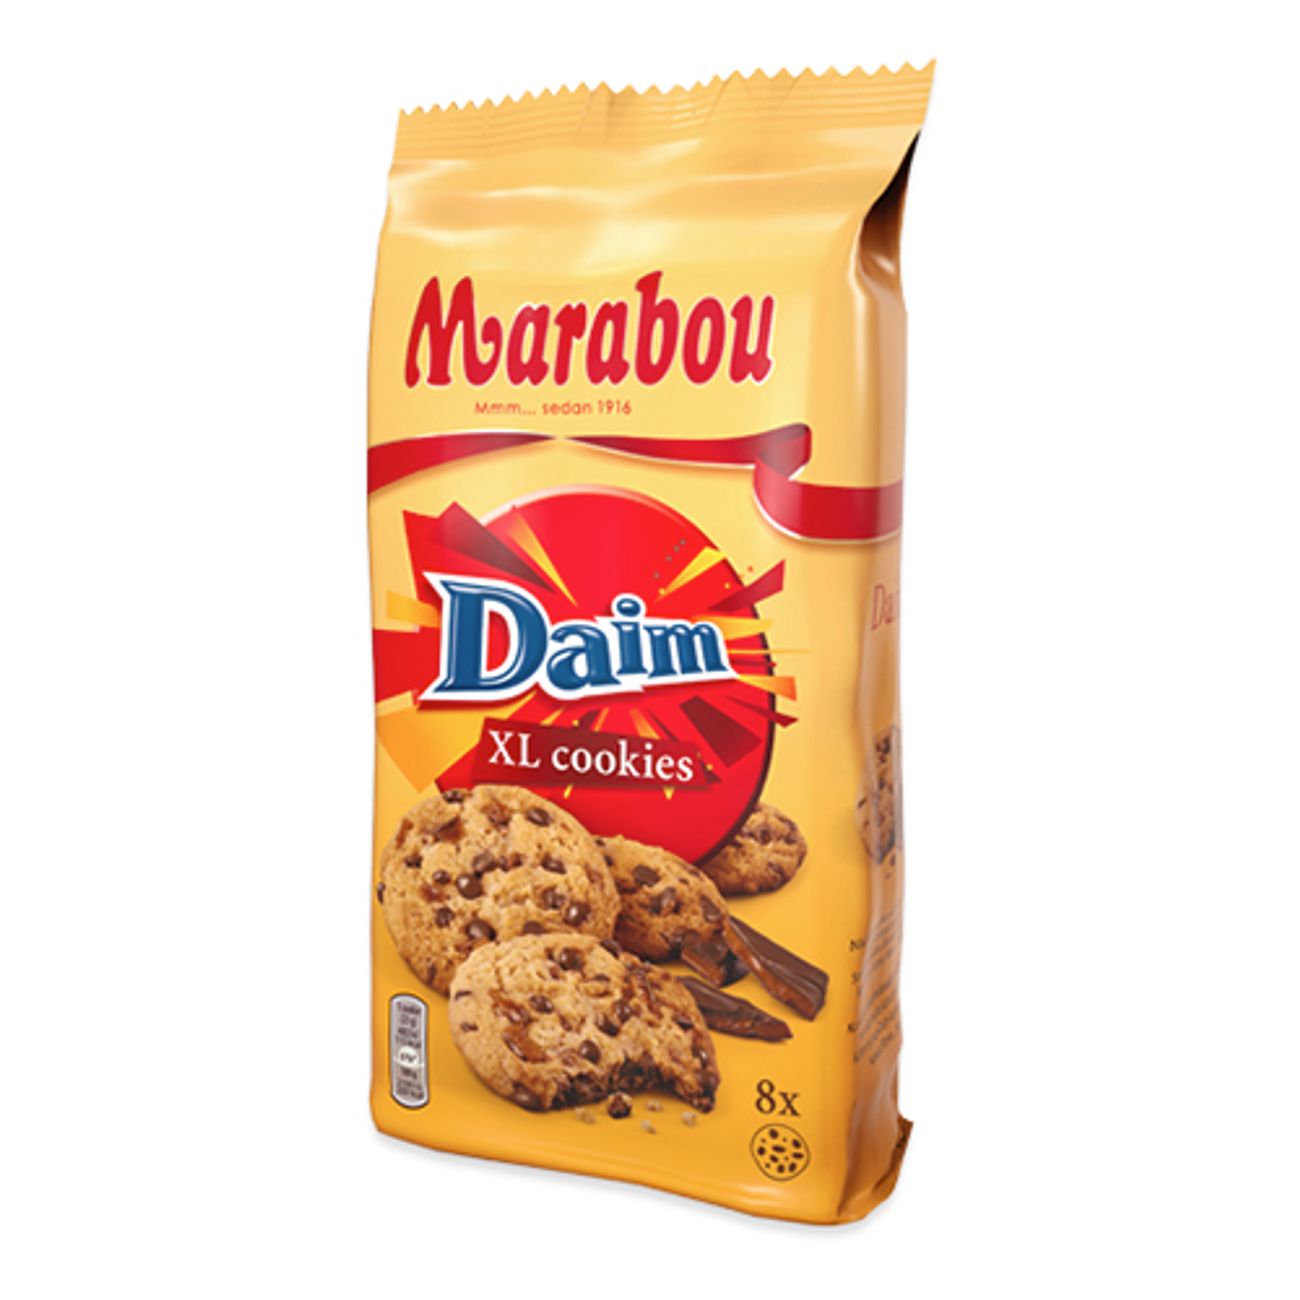 marabou-xl-cookies-daim-1